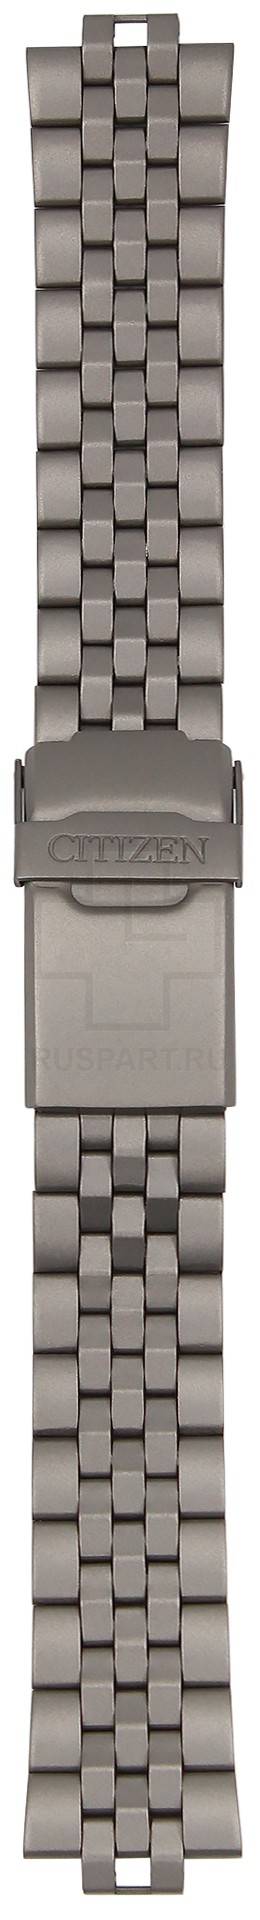 Citizen 59-J0210 - Белый Браслет наручных часов металлический в интернет-магазине Watchband.ru.